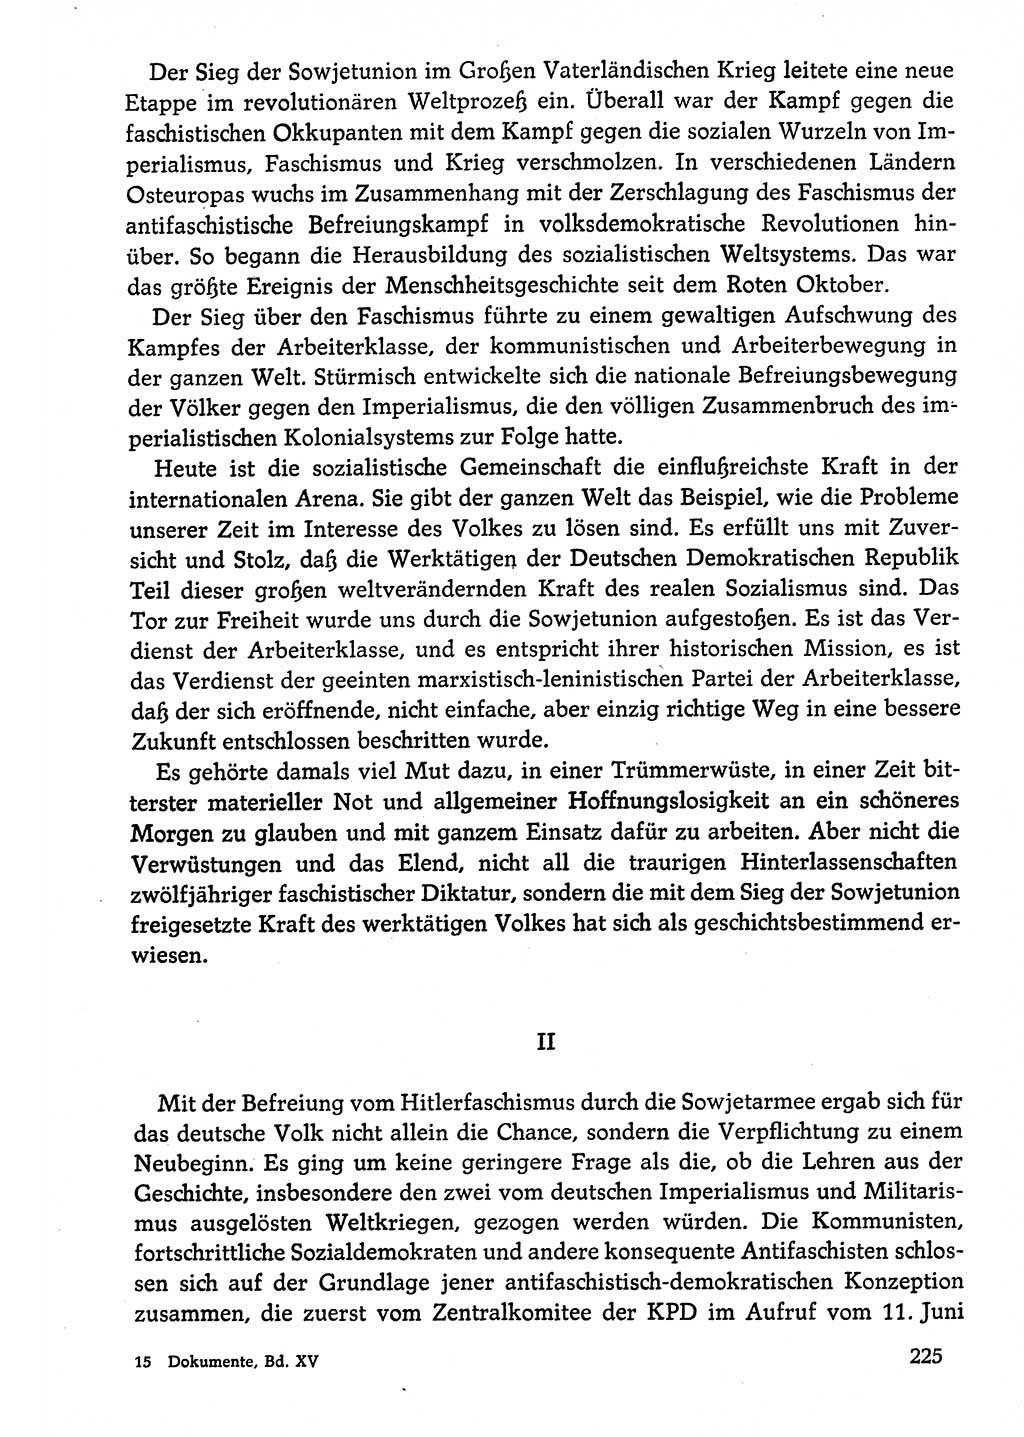 Dokumente der Sozialistischen Einheitspartei Deutschlands (SED) [Deutsche Demokratische Republik (DDR)] 1974-1975, Seite 225 (Dok. SED DDR 1978, Bd. ⅩⅤ, S. 225)